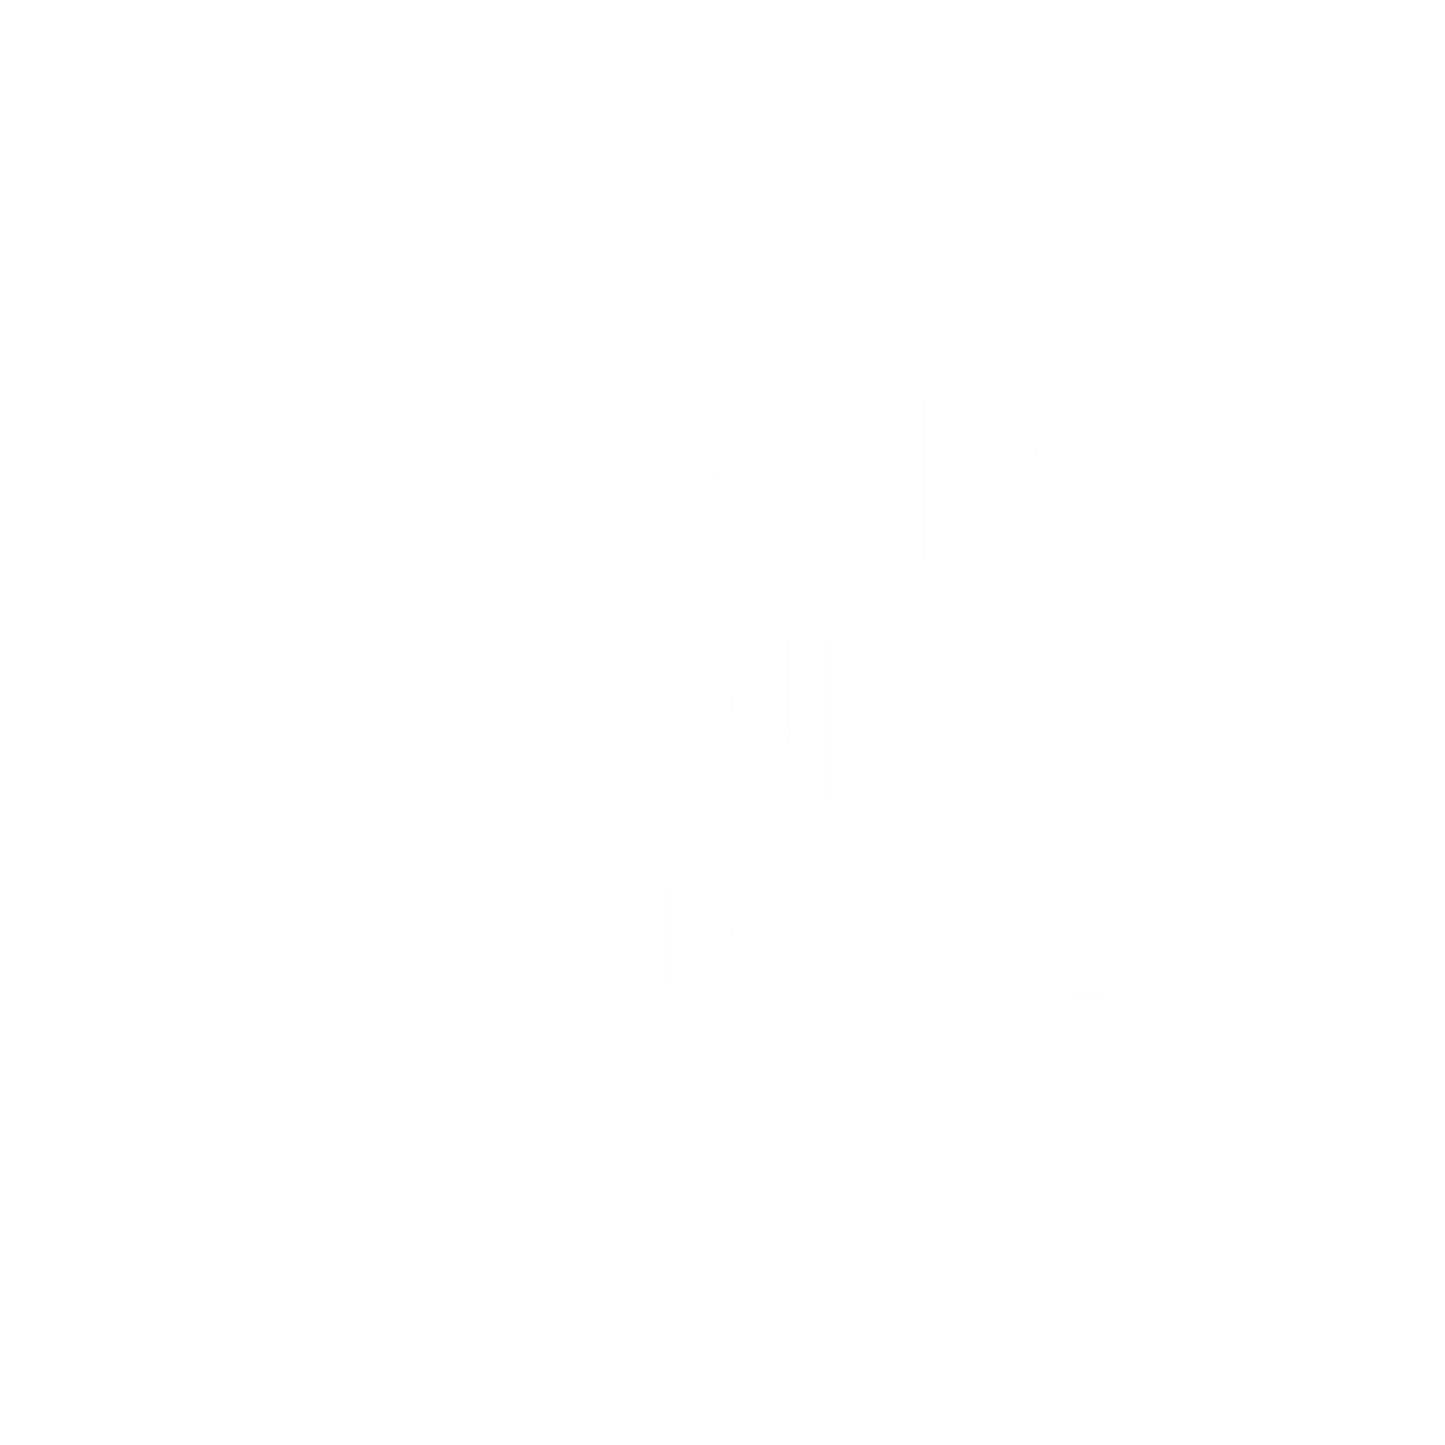 Loopaina Records